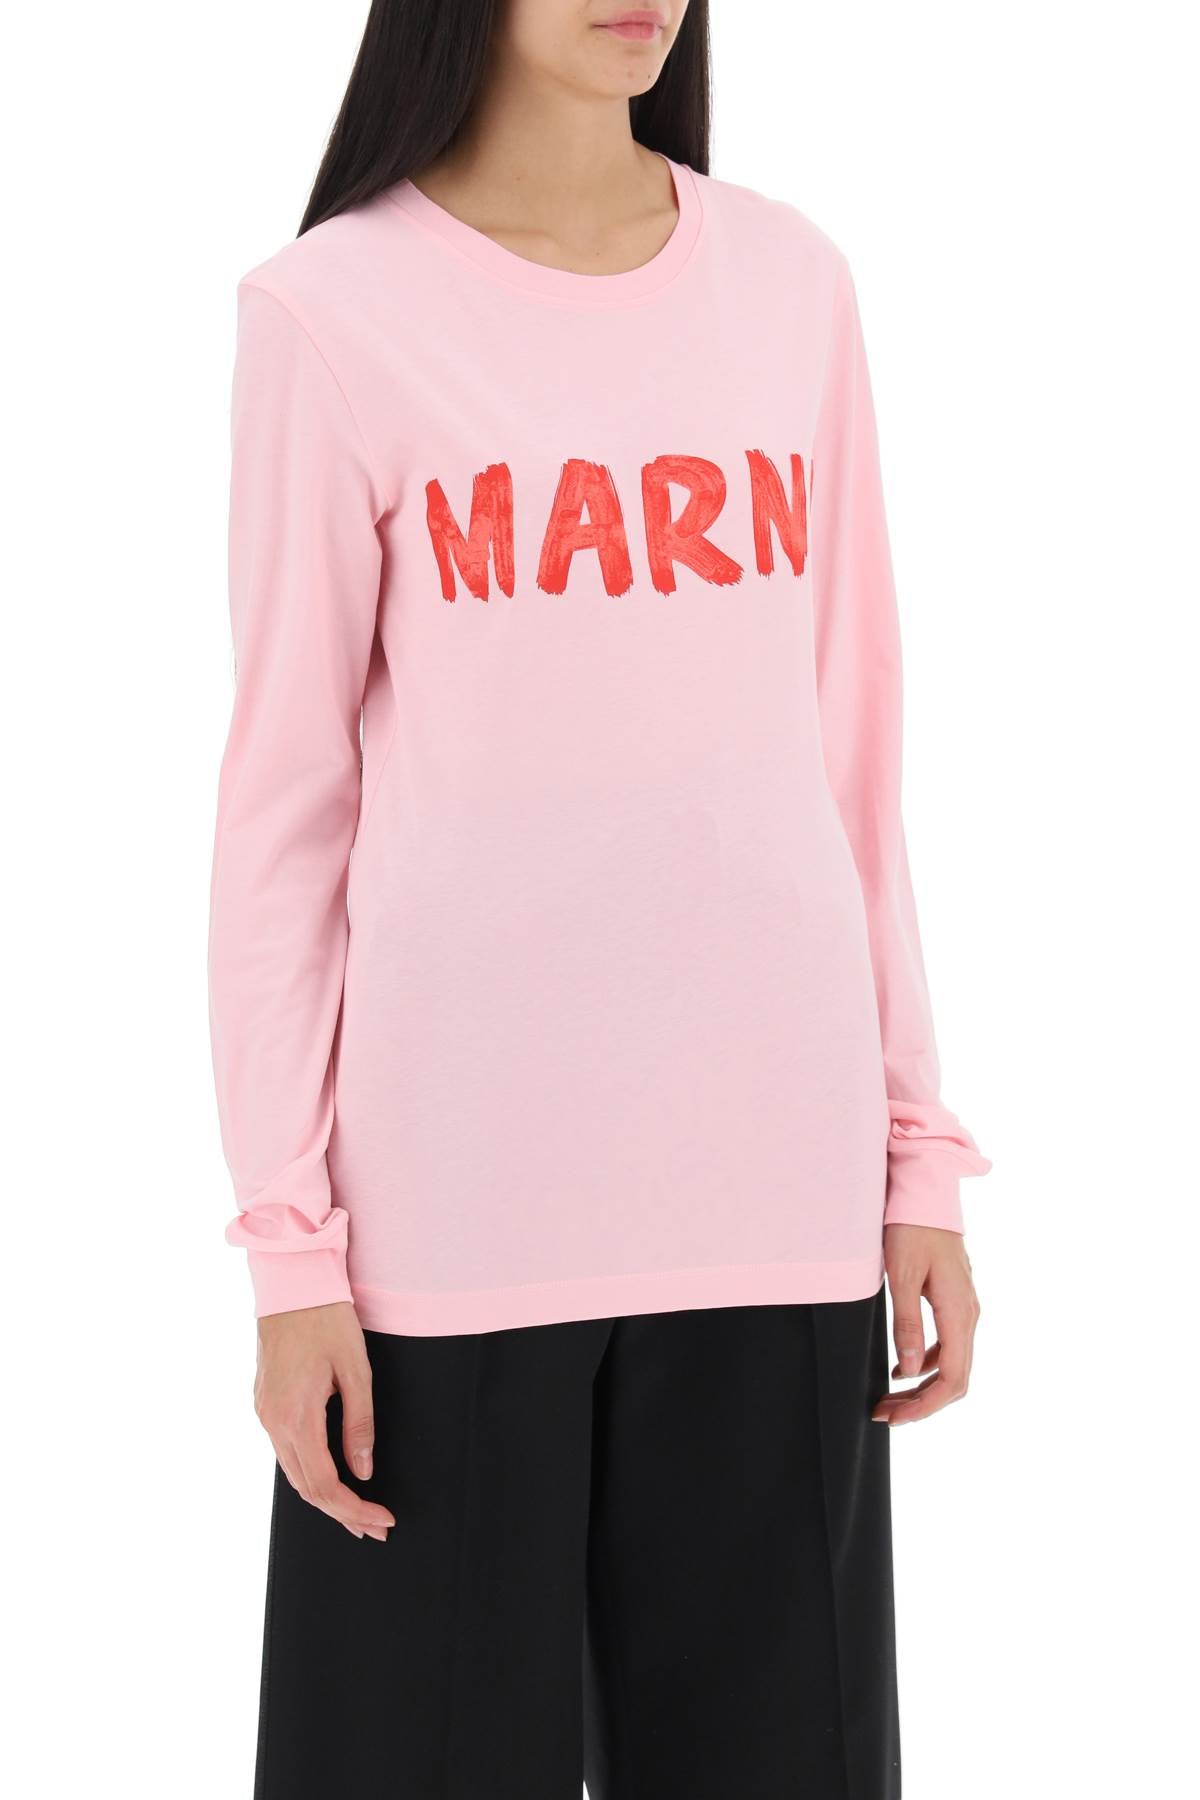 Marni brushed logo long-sleeved t-shirt-1